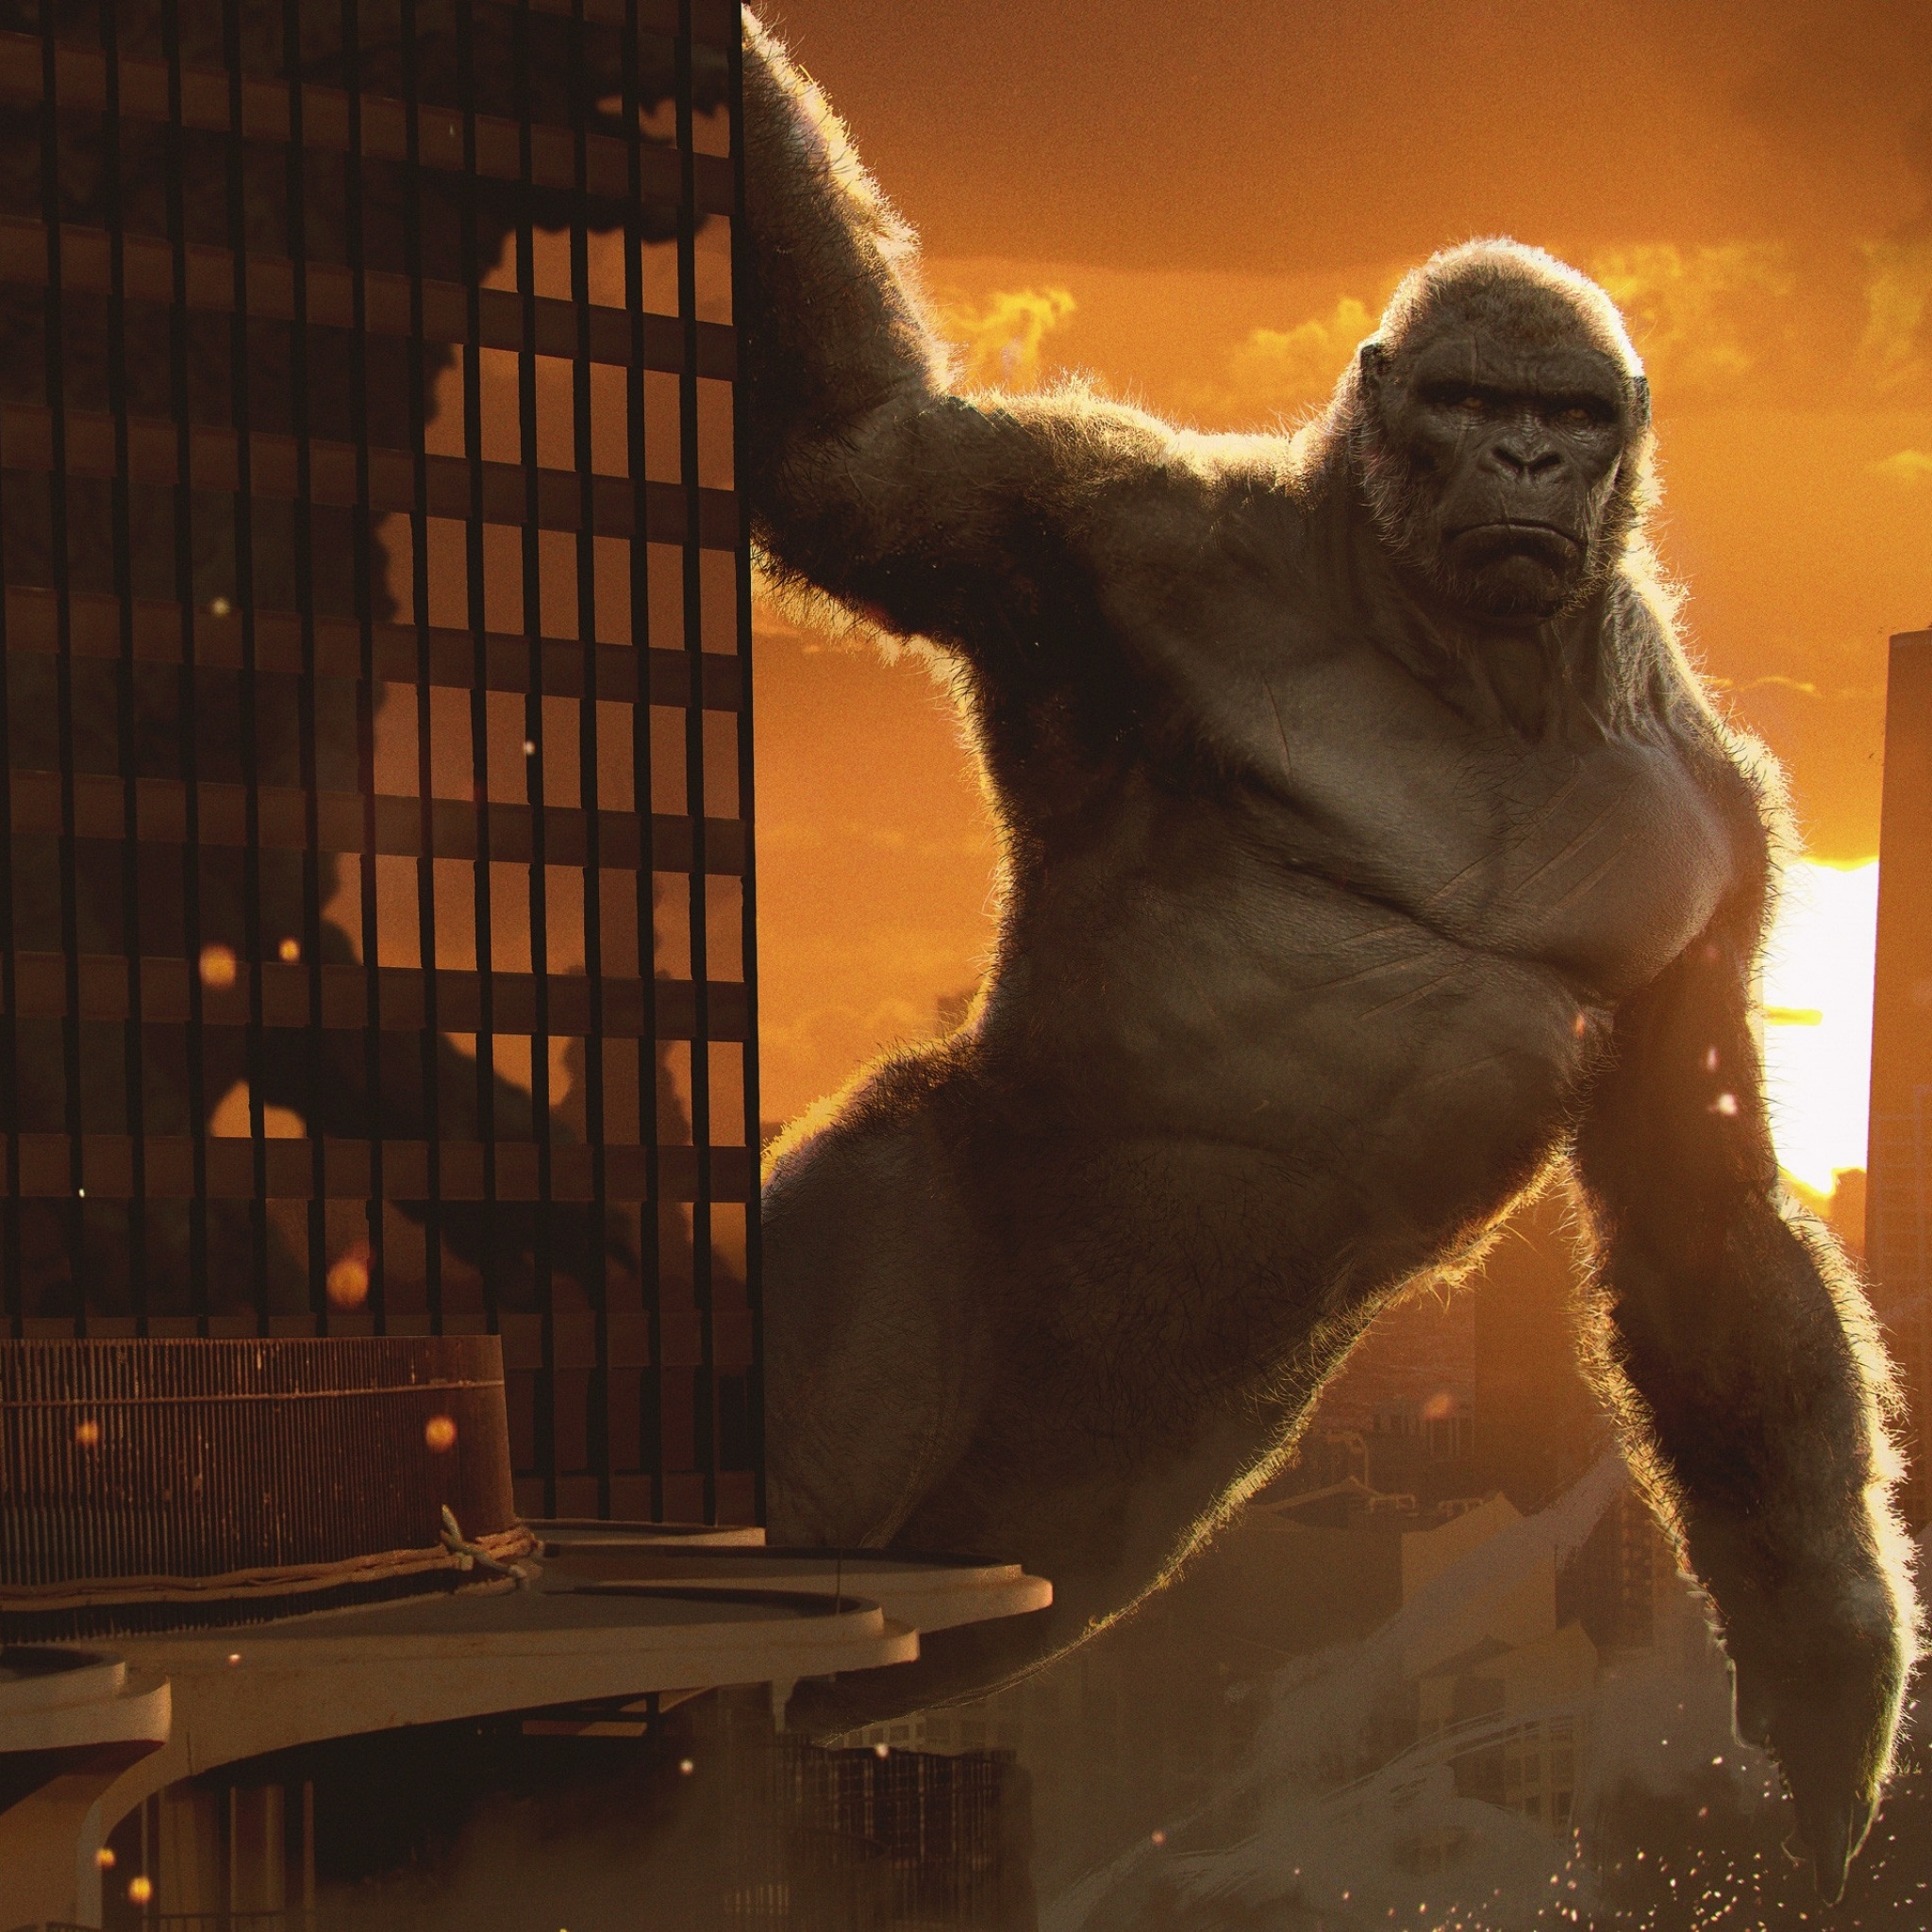 Godzilla vs Kong Wallpaper 4K, King Kong, 2020 Movies, Movies, #1255